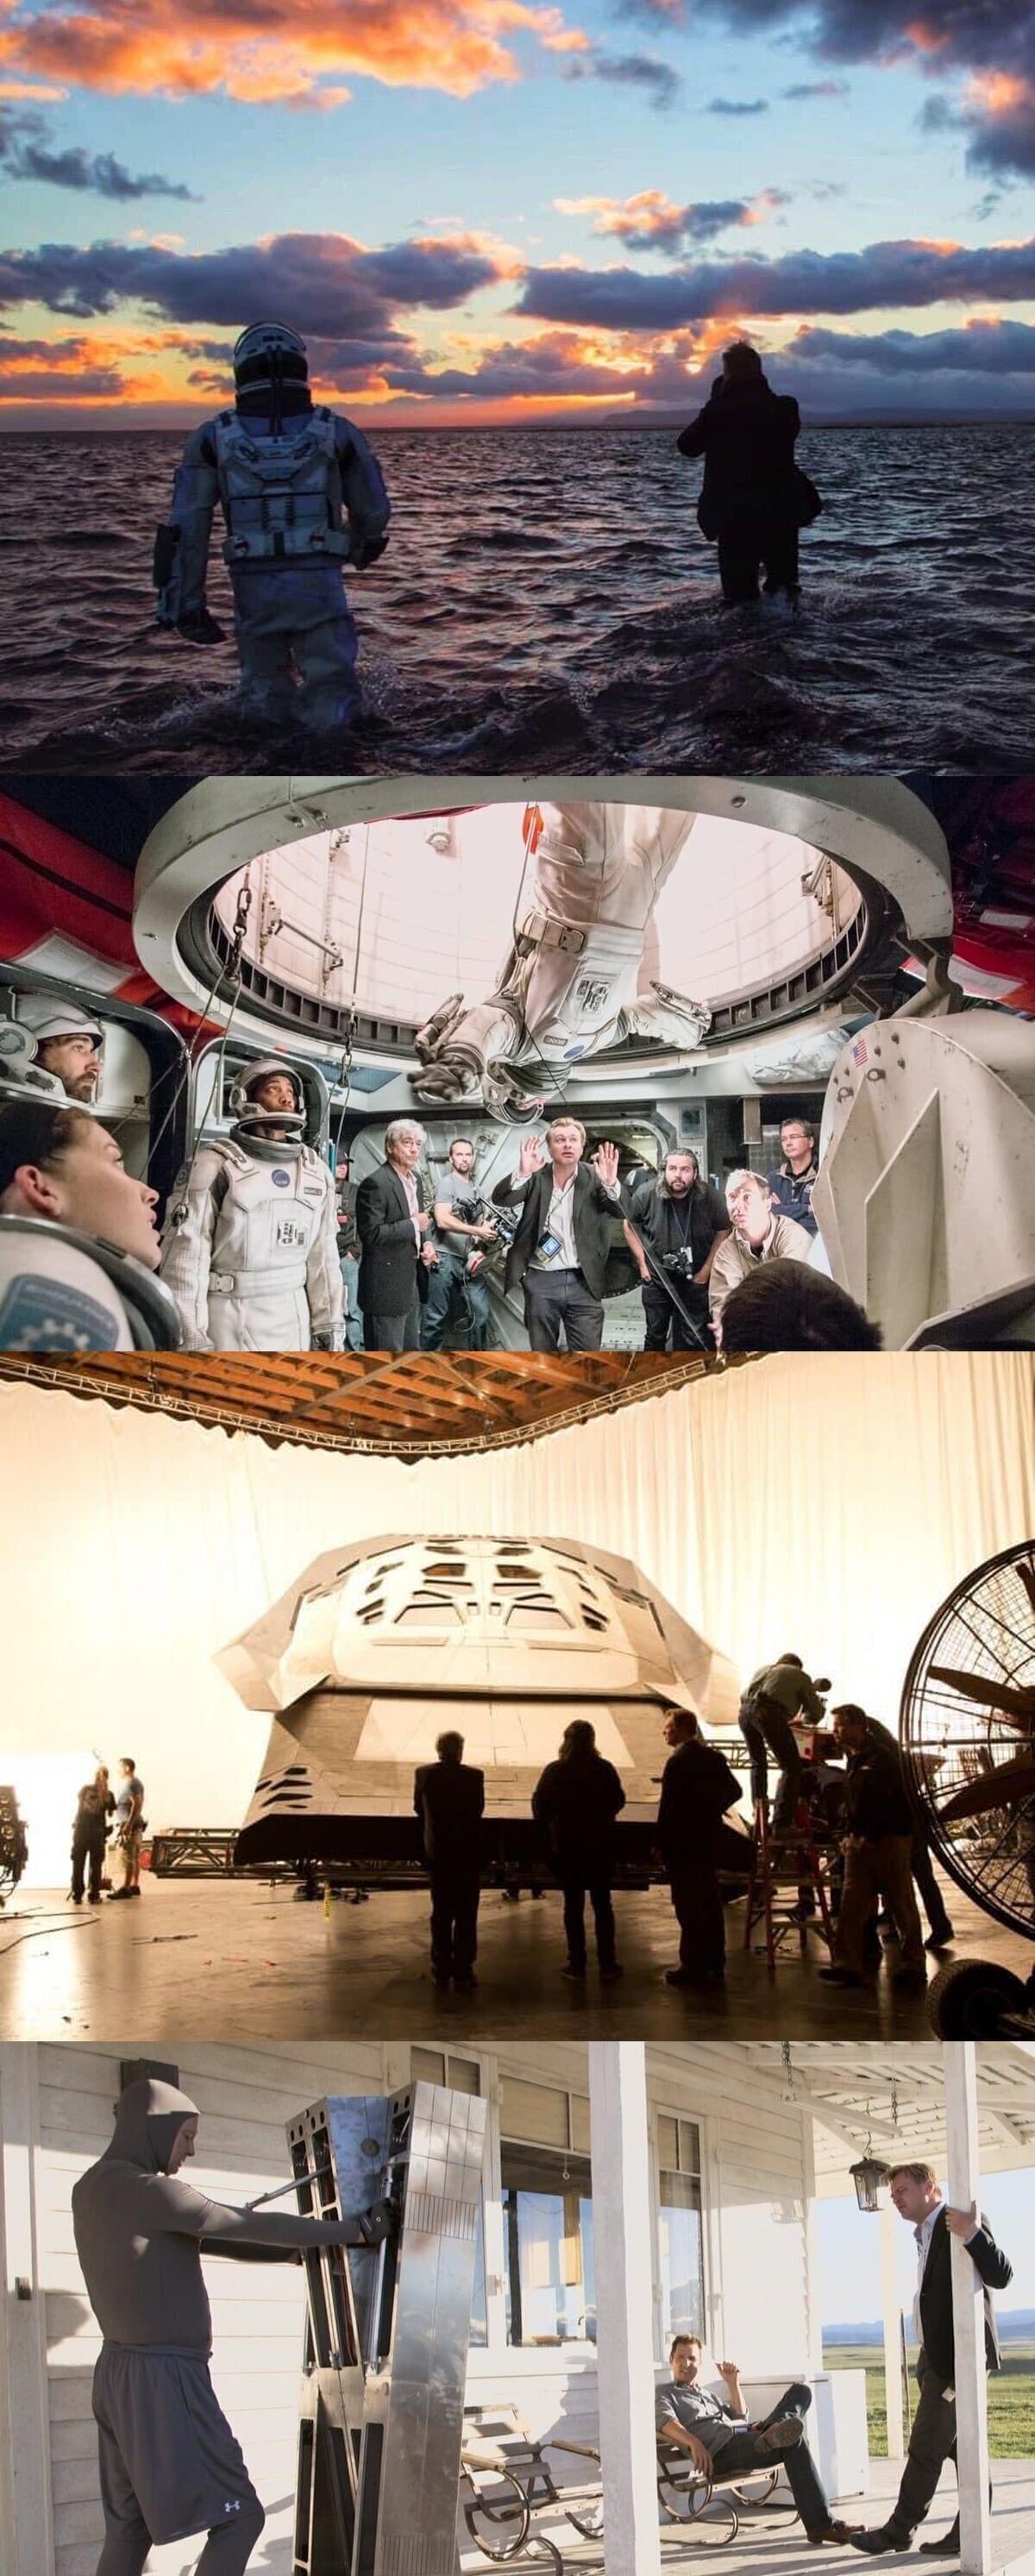 Fotos del rodaje de “Interstellar”. Alucinaréis con algunos de los escenarios que eran reales y todos pensaríamos que estaban hechos con CGI.